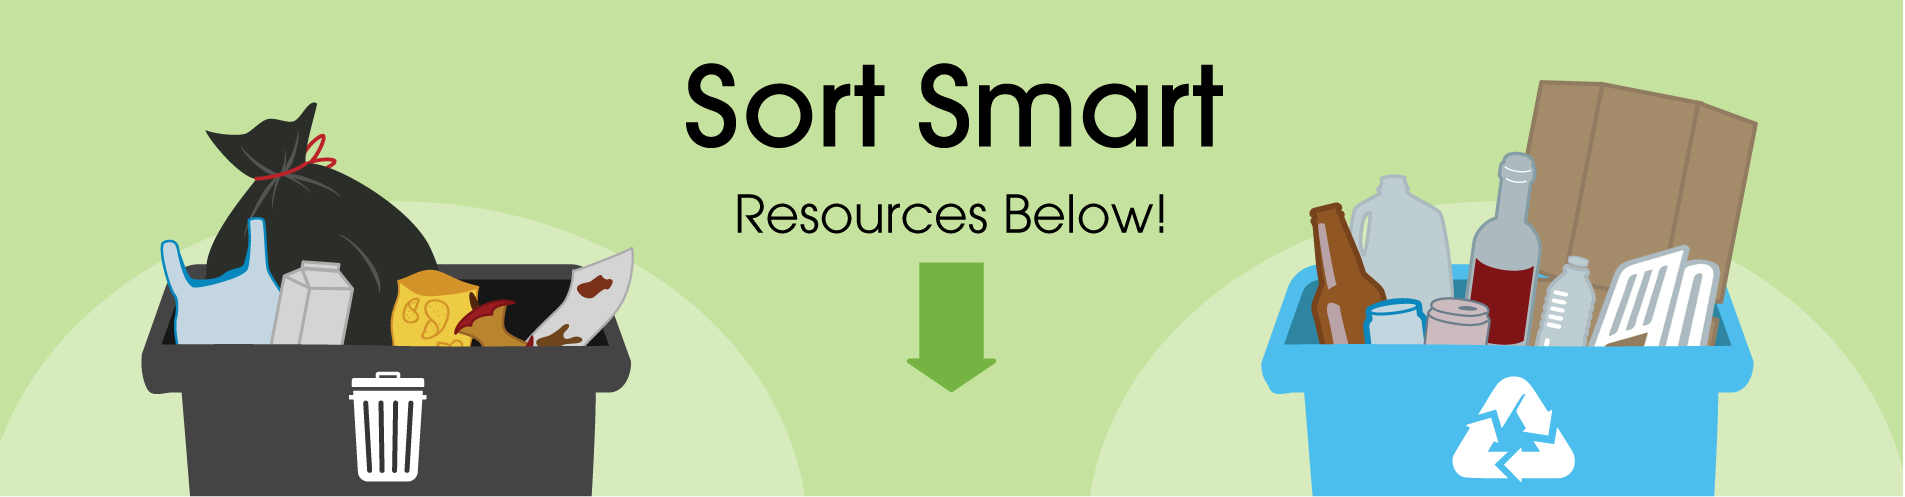 Sort Smart Resource Below